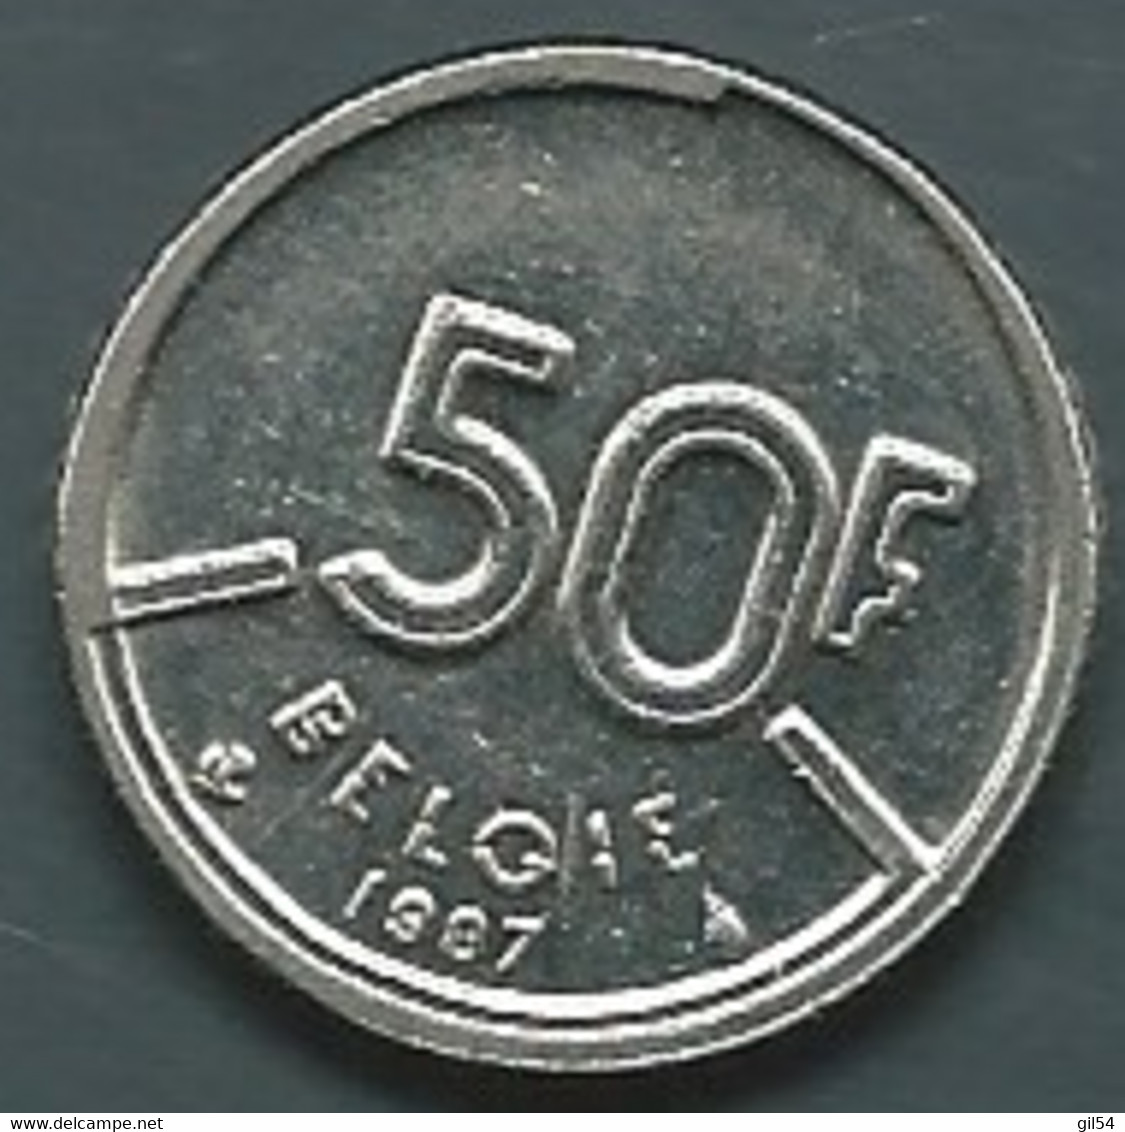 Coin ,1987 - Belgique - Belgium - 50 FRANCS, Baudouin 1, Légende Belgie  Pic 7704 - 50 Francs